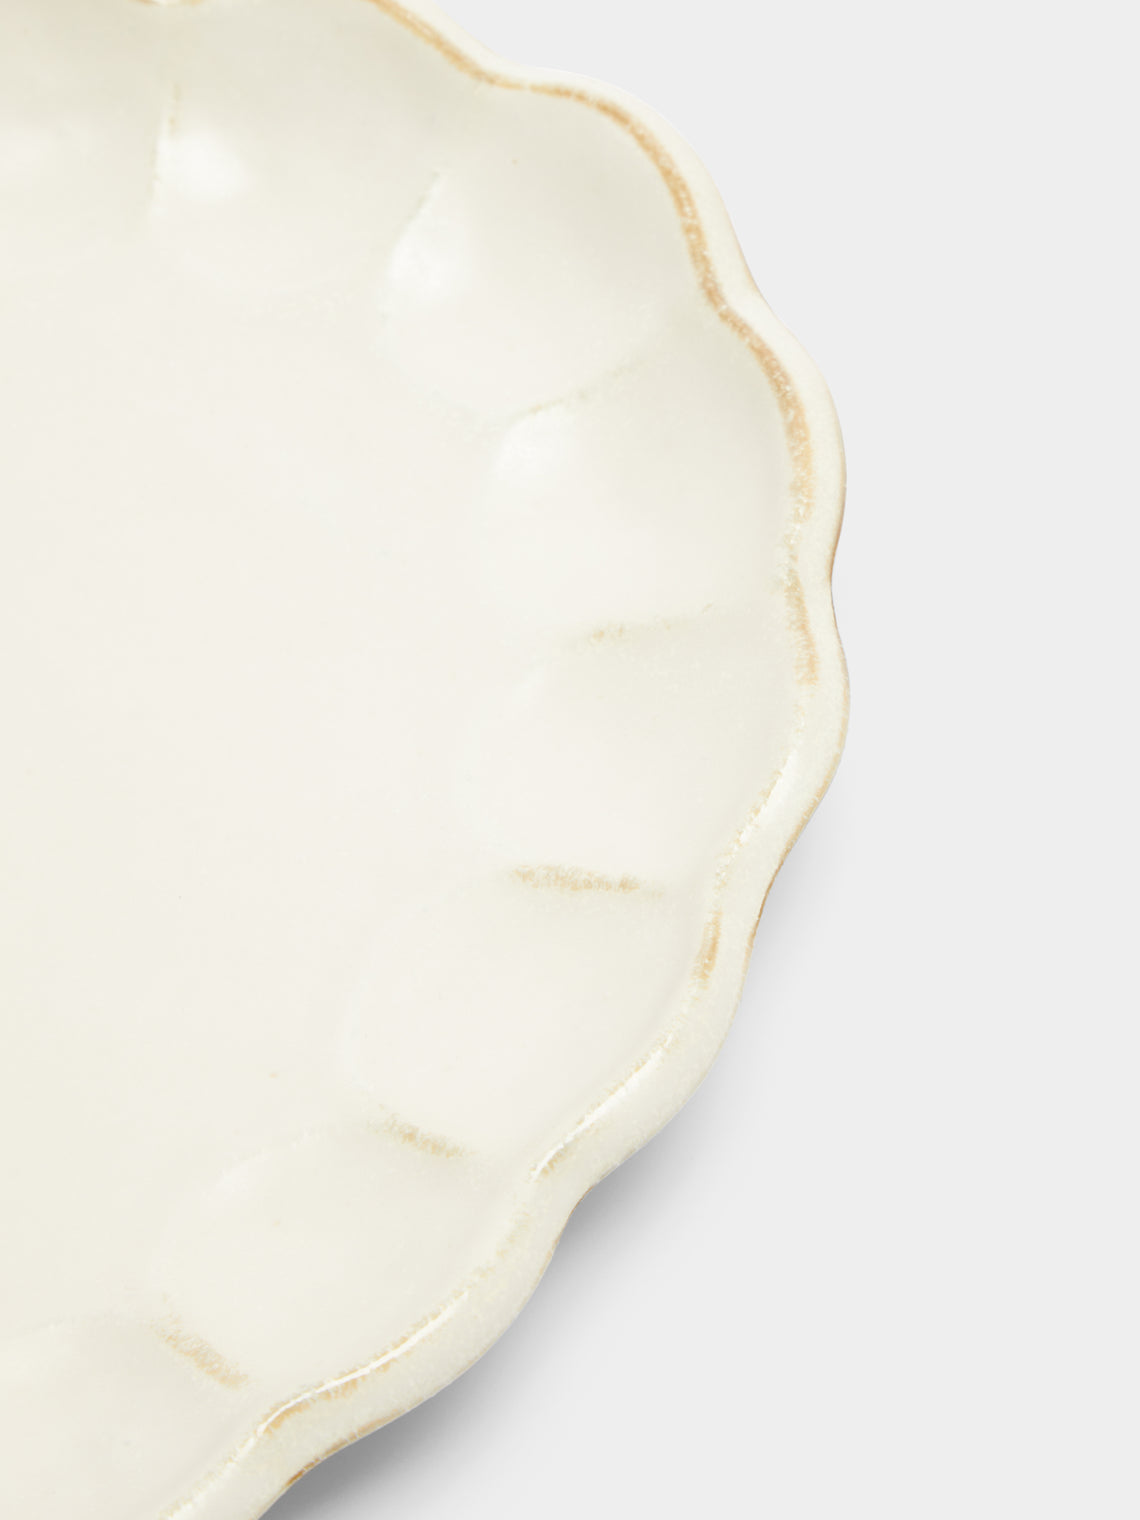 Kaneko Kohyo - Rinka Ceramic Large Serving Platter - White - ABASK